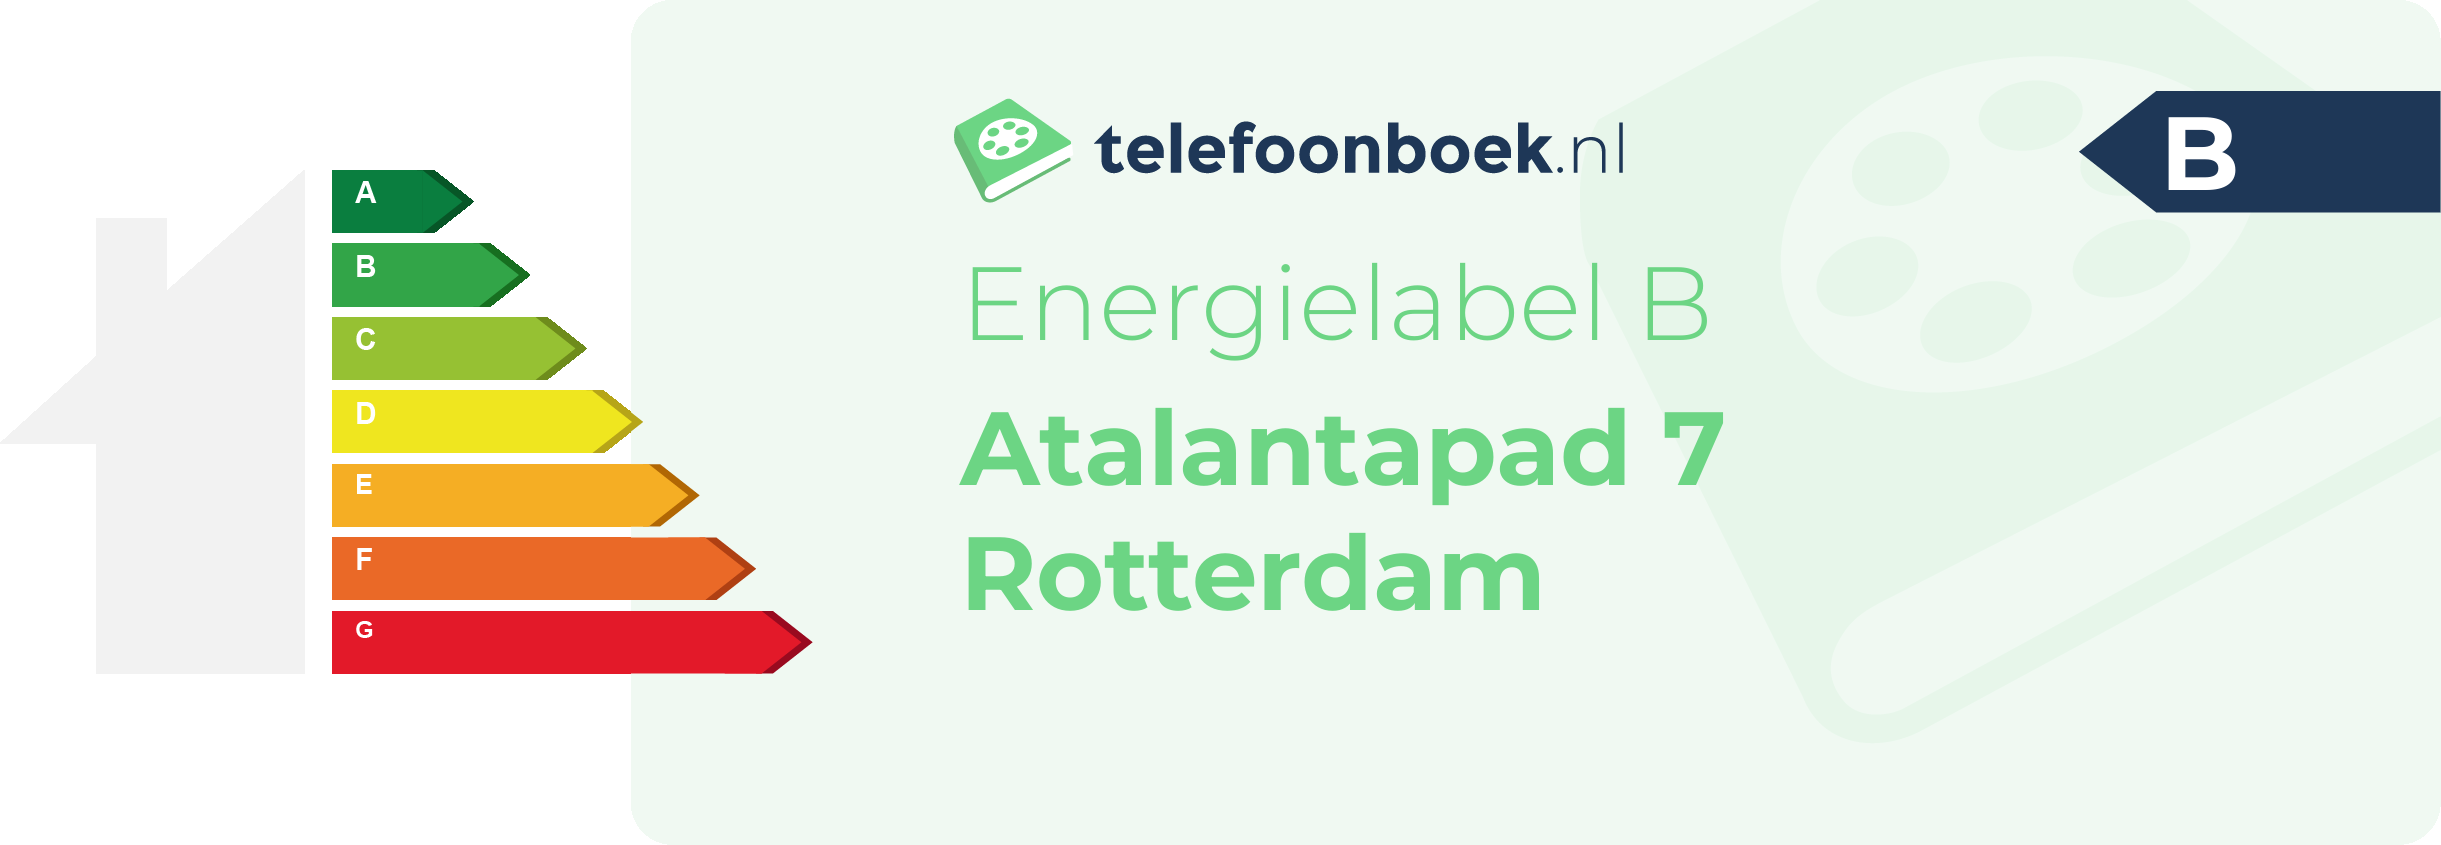 Energielabel Atalantapad 7 Rotterdam